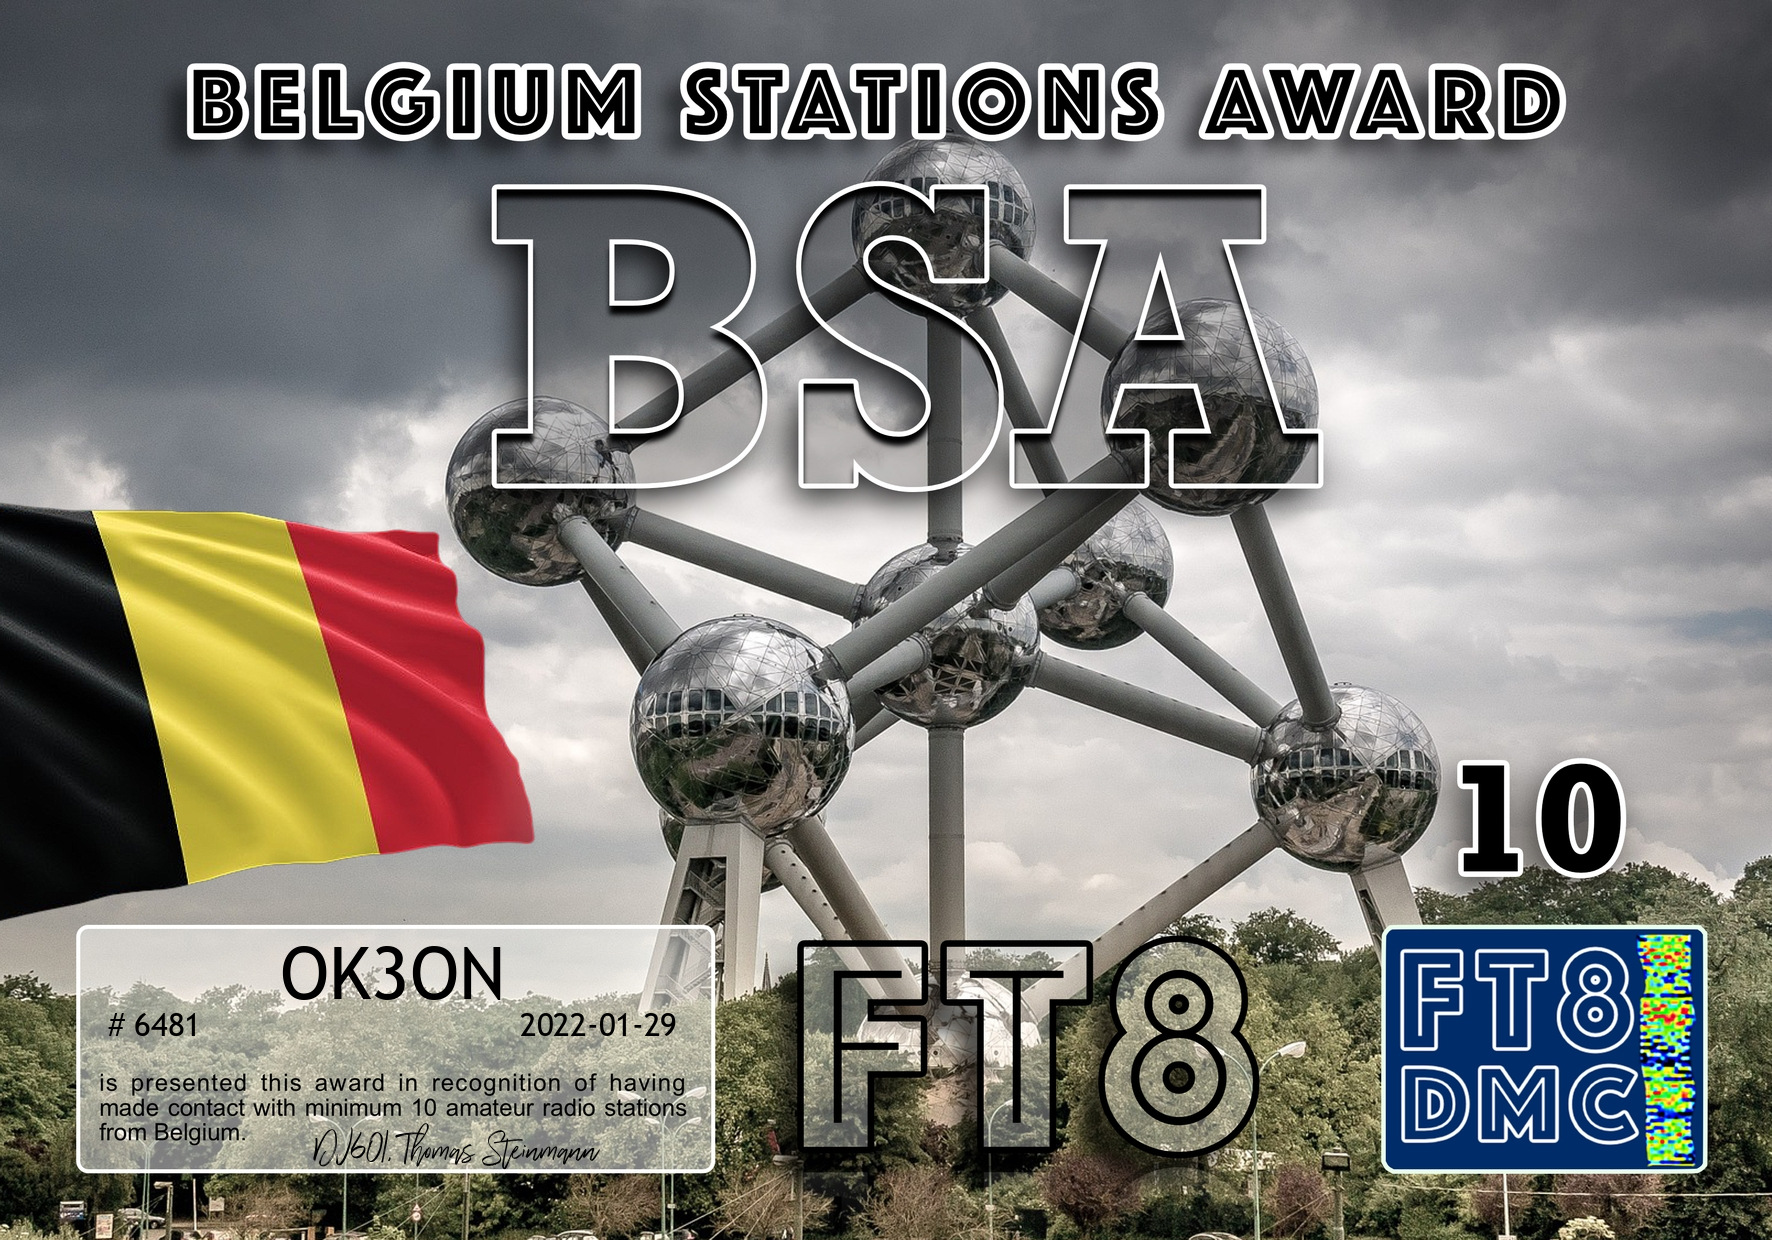 awards/OK3ON-BSA-III_FT8DMC.jpg